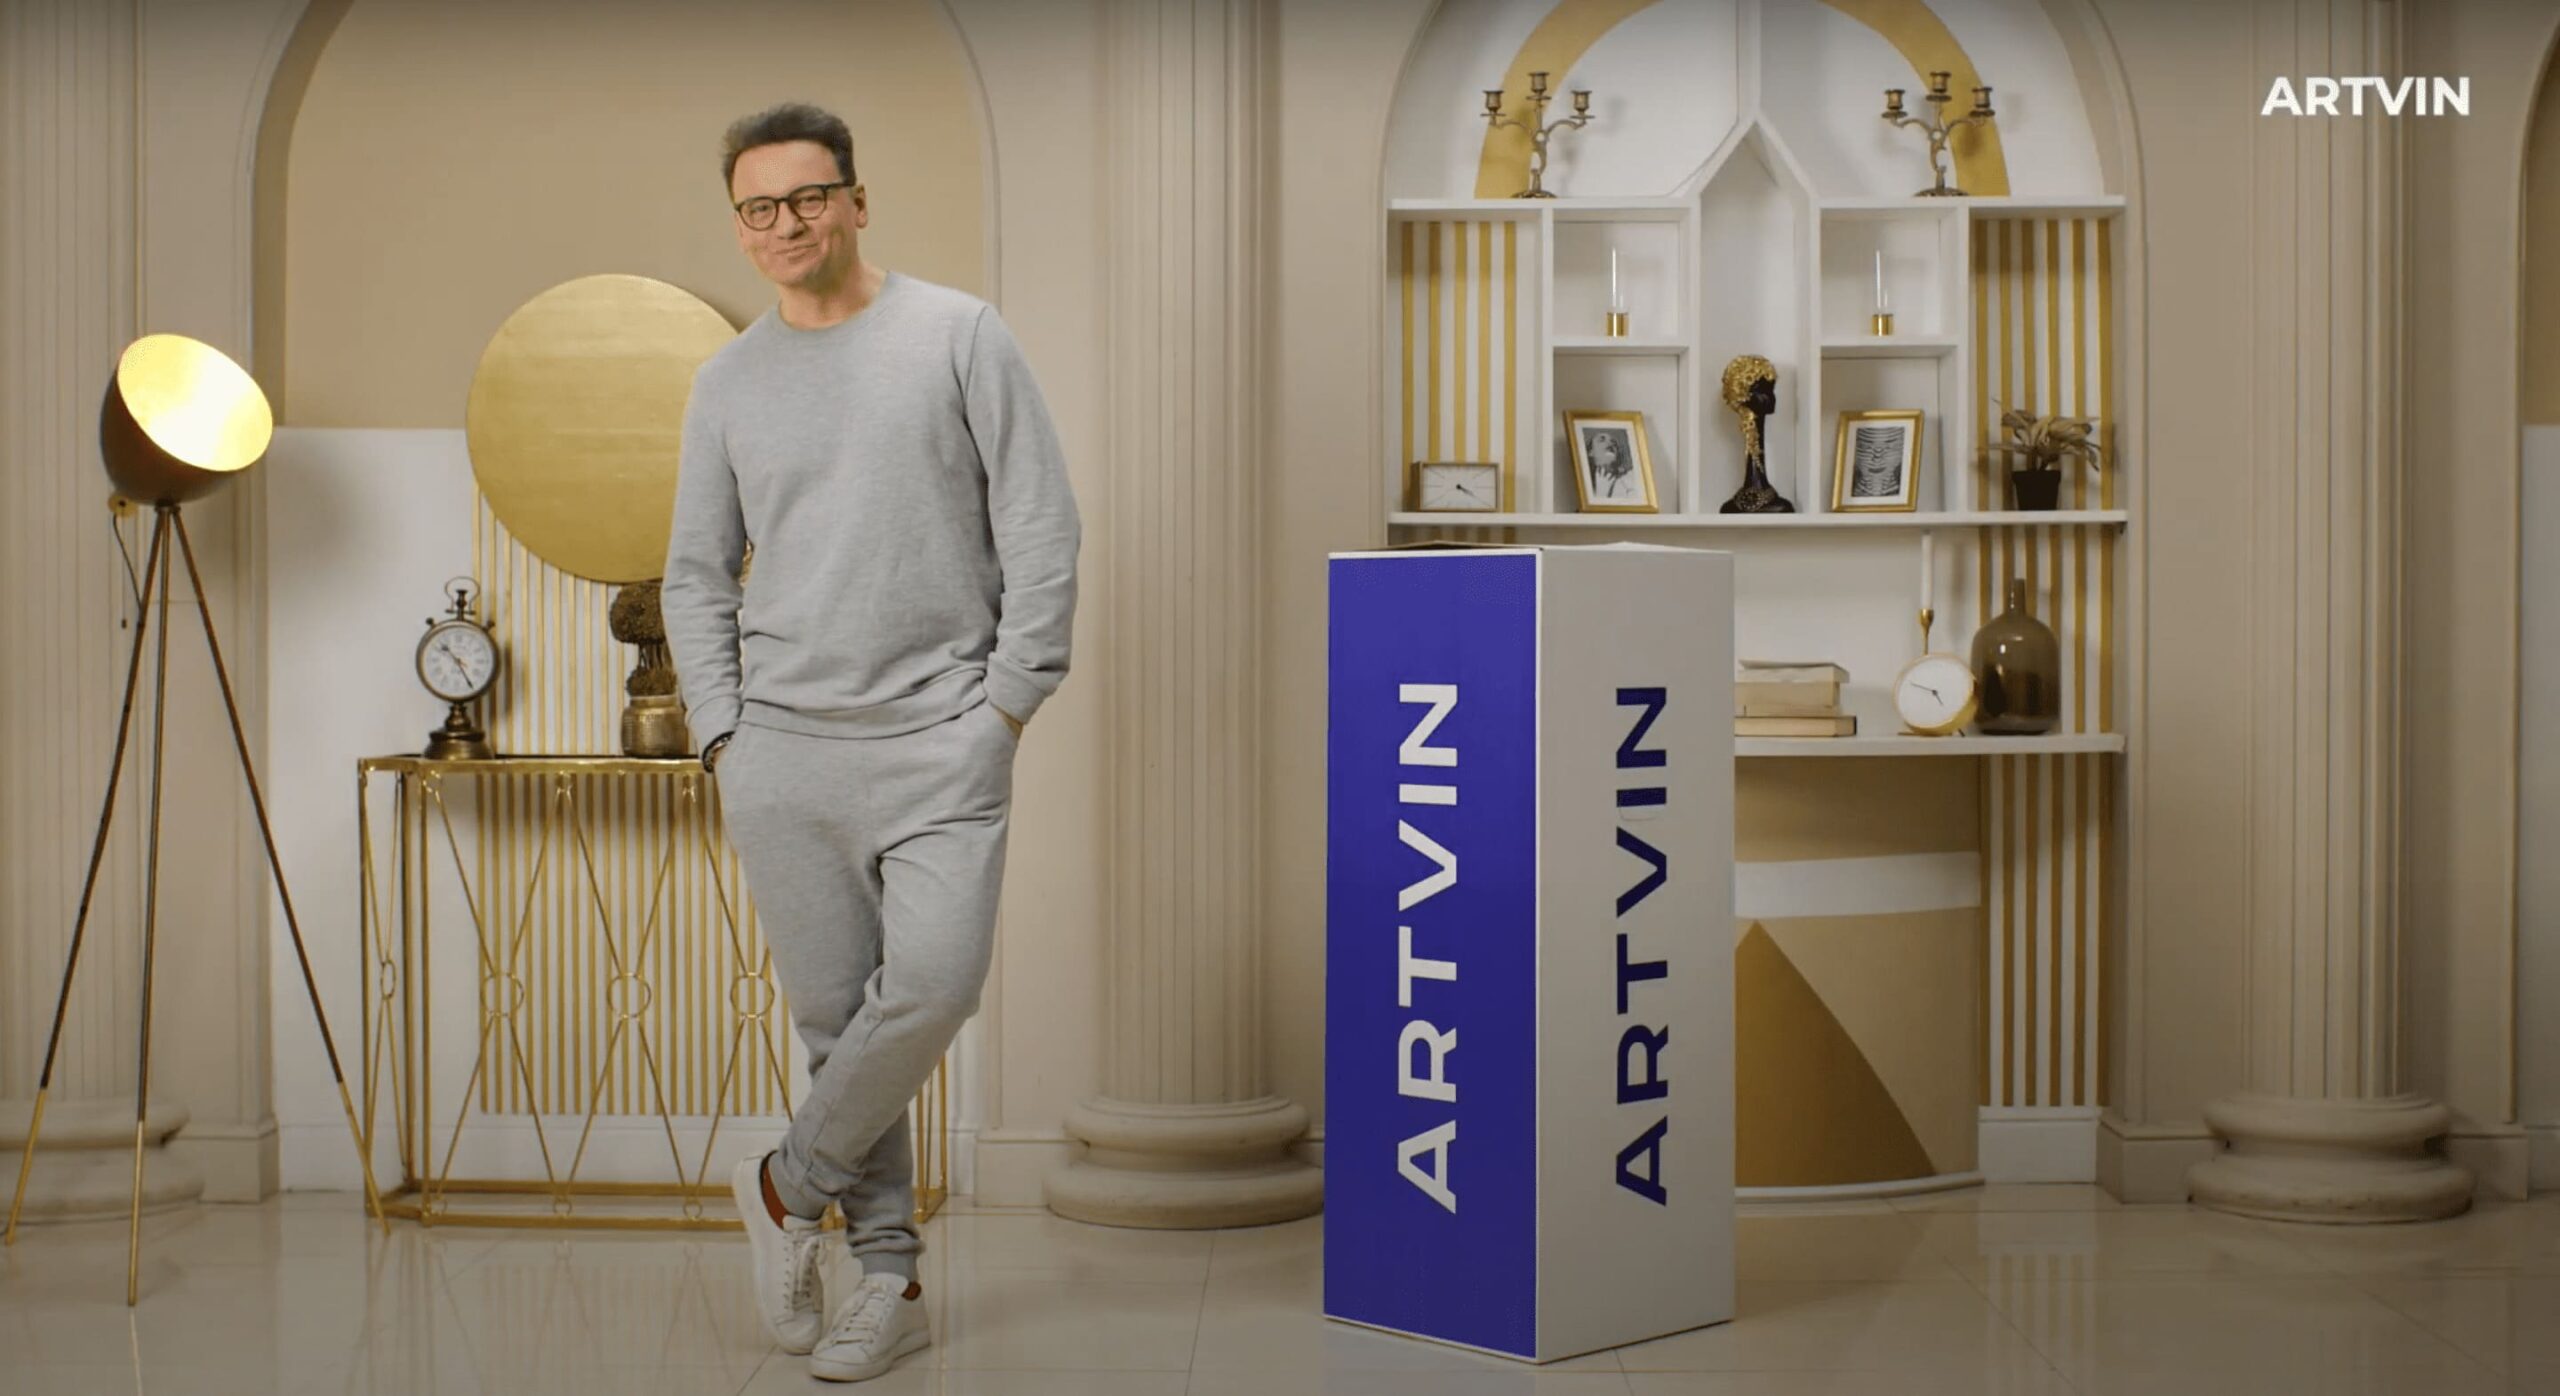 ARTVIN | Рекламный видеоролик с Александром Олешко | Реклама